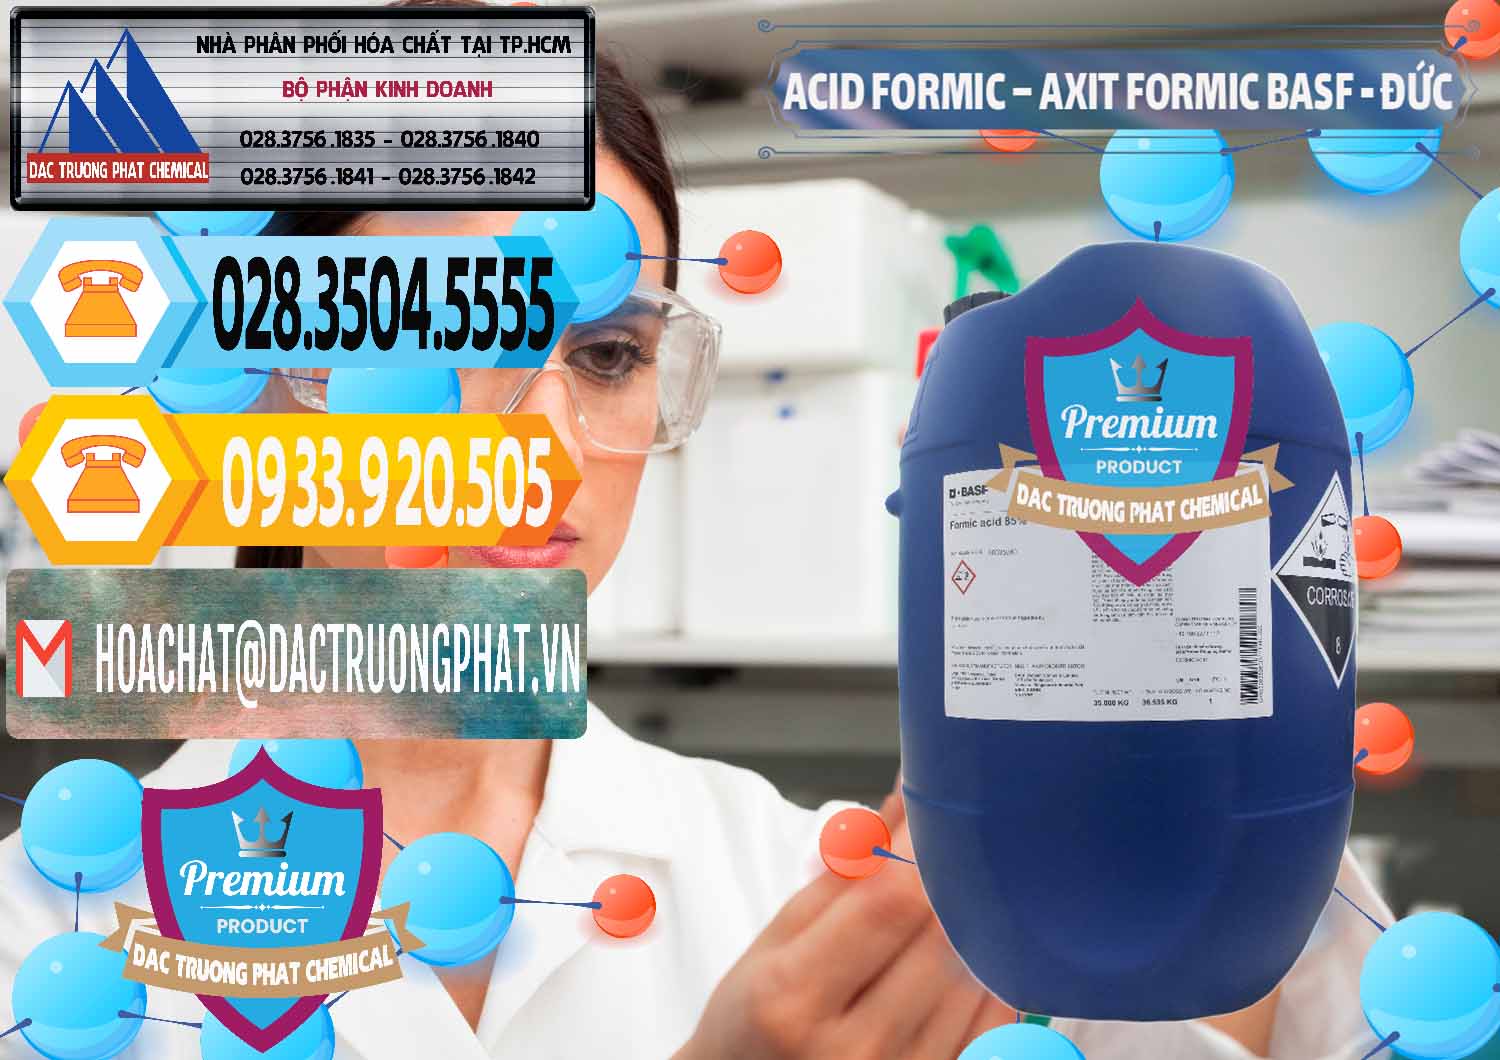 Chuyên bán ( cung cấp ) Acid Formic - Axit Formic BASF Đức Germany - 0028 - Chuyên bán ( phân phối ) hóa chất tại TP.HCM - hoachattayrua.net